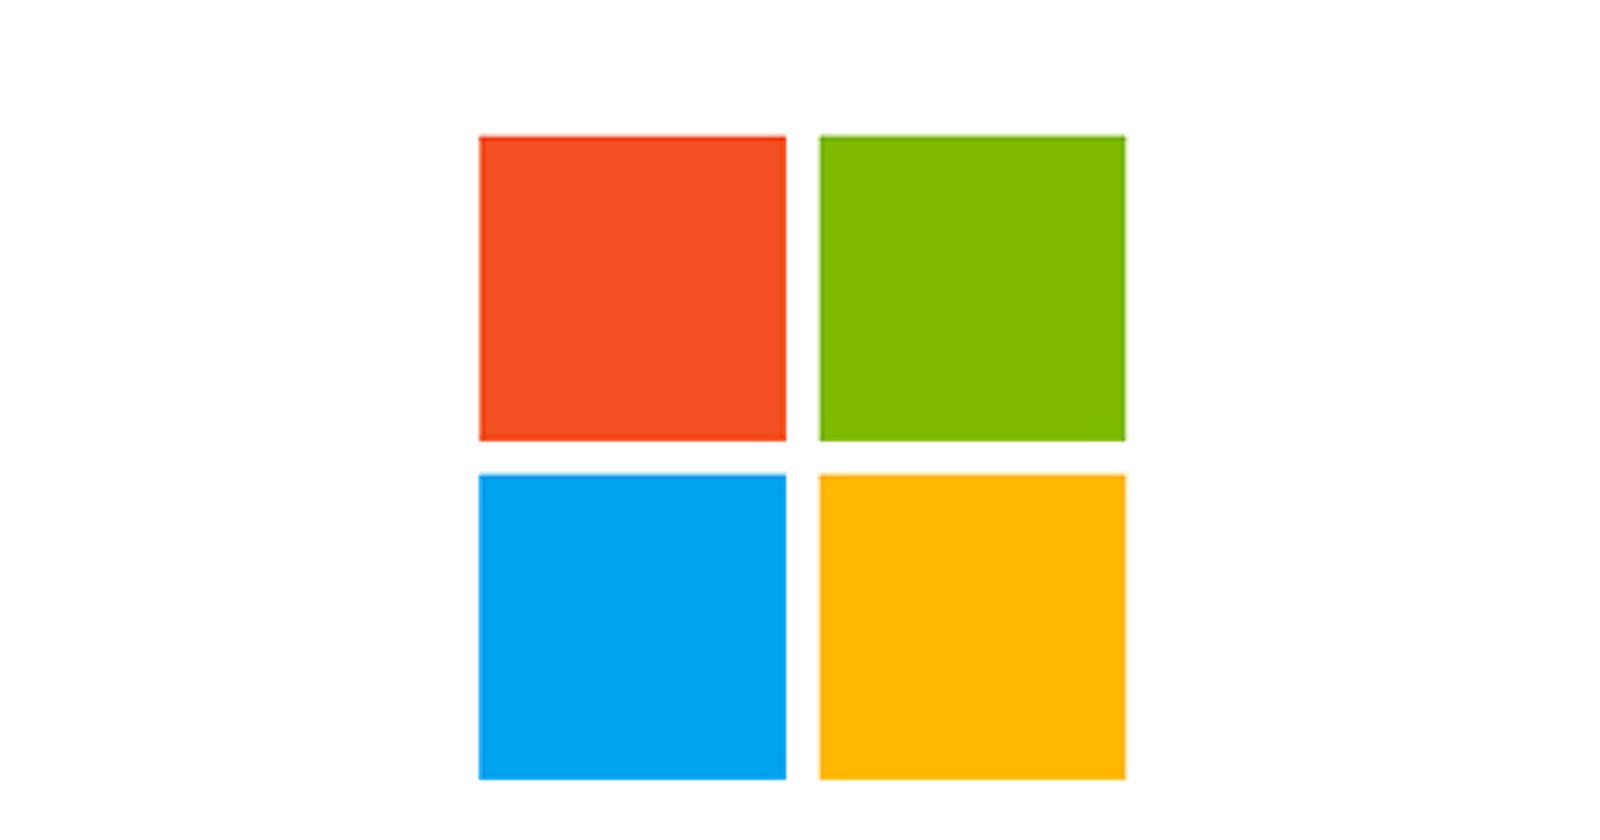 Microsoft: The Tech Empire